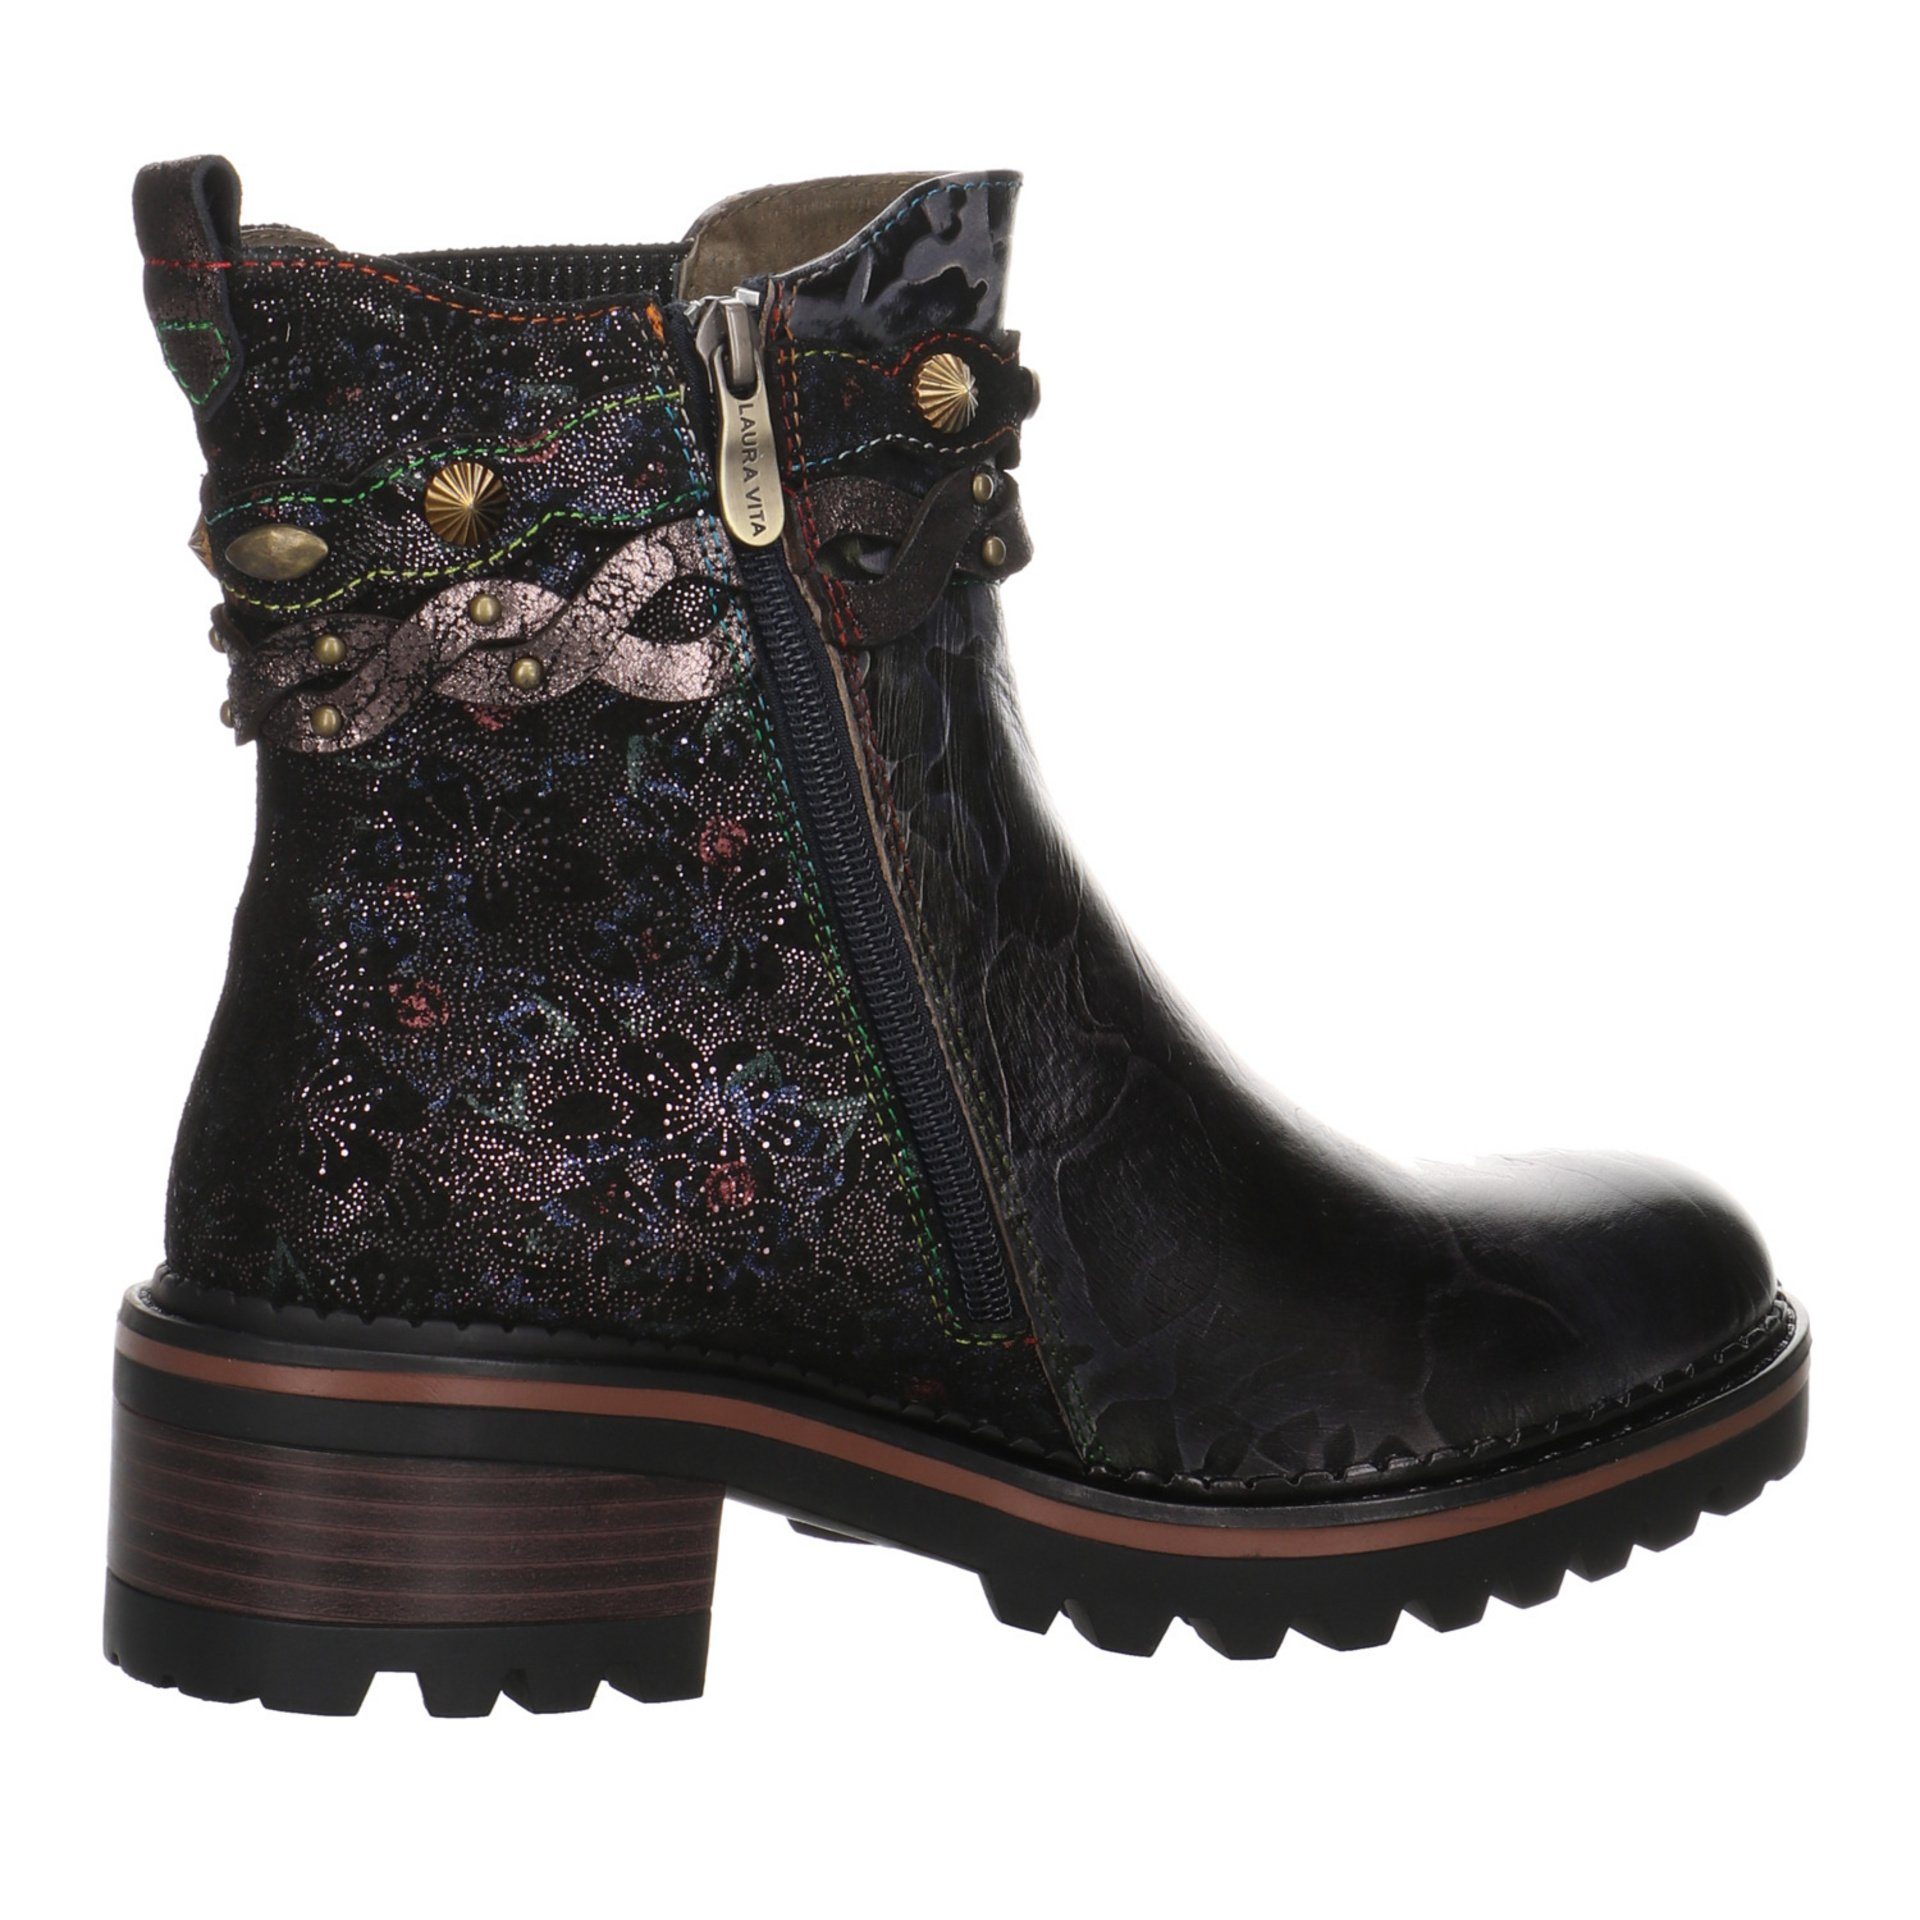 LAURA VITA Damen Schuhe Freizeit Elegant Leder-/Textilkombination Kesso Boots Stiefel Stiefel